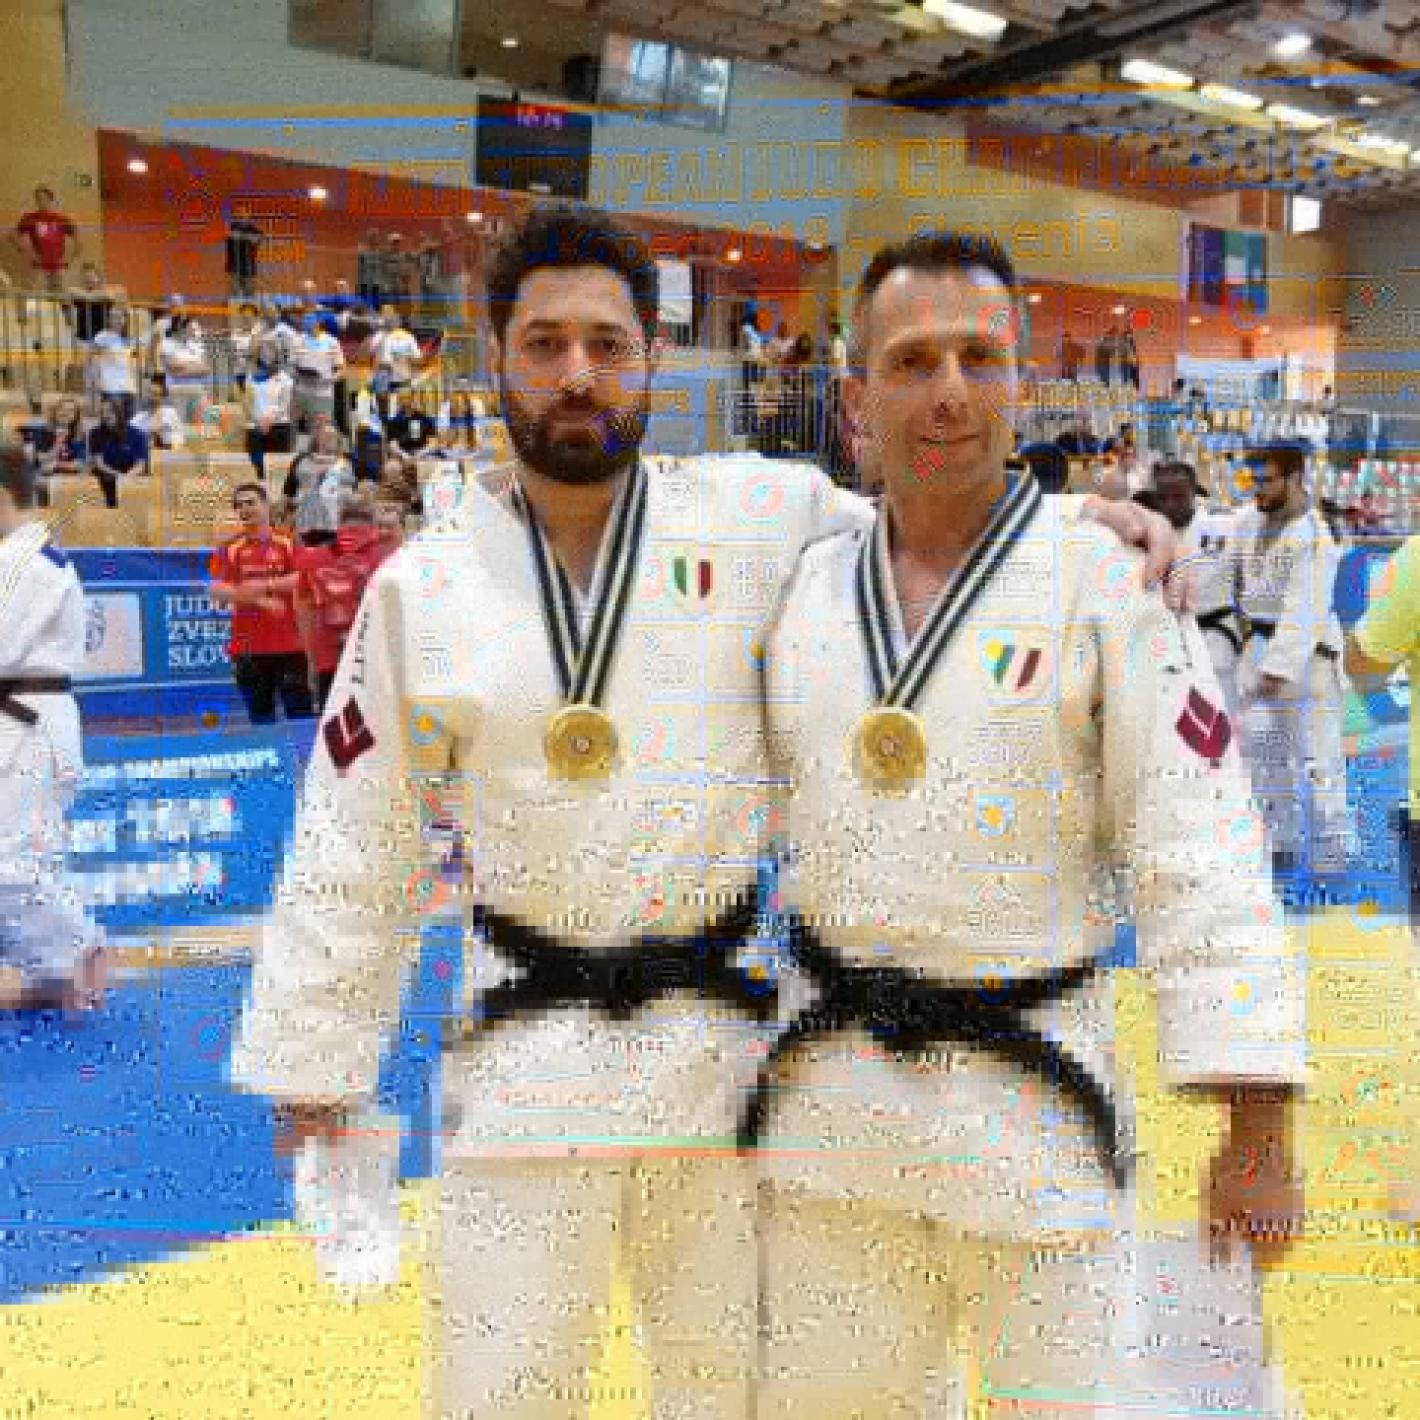 images/umbria/2017-200_Comitato/judo/medium/Proietti-Varazzi-Judo_europei_2.jpg